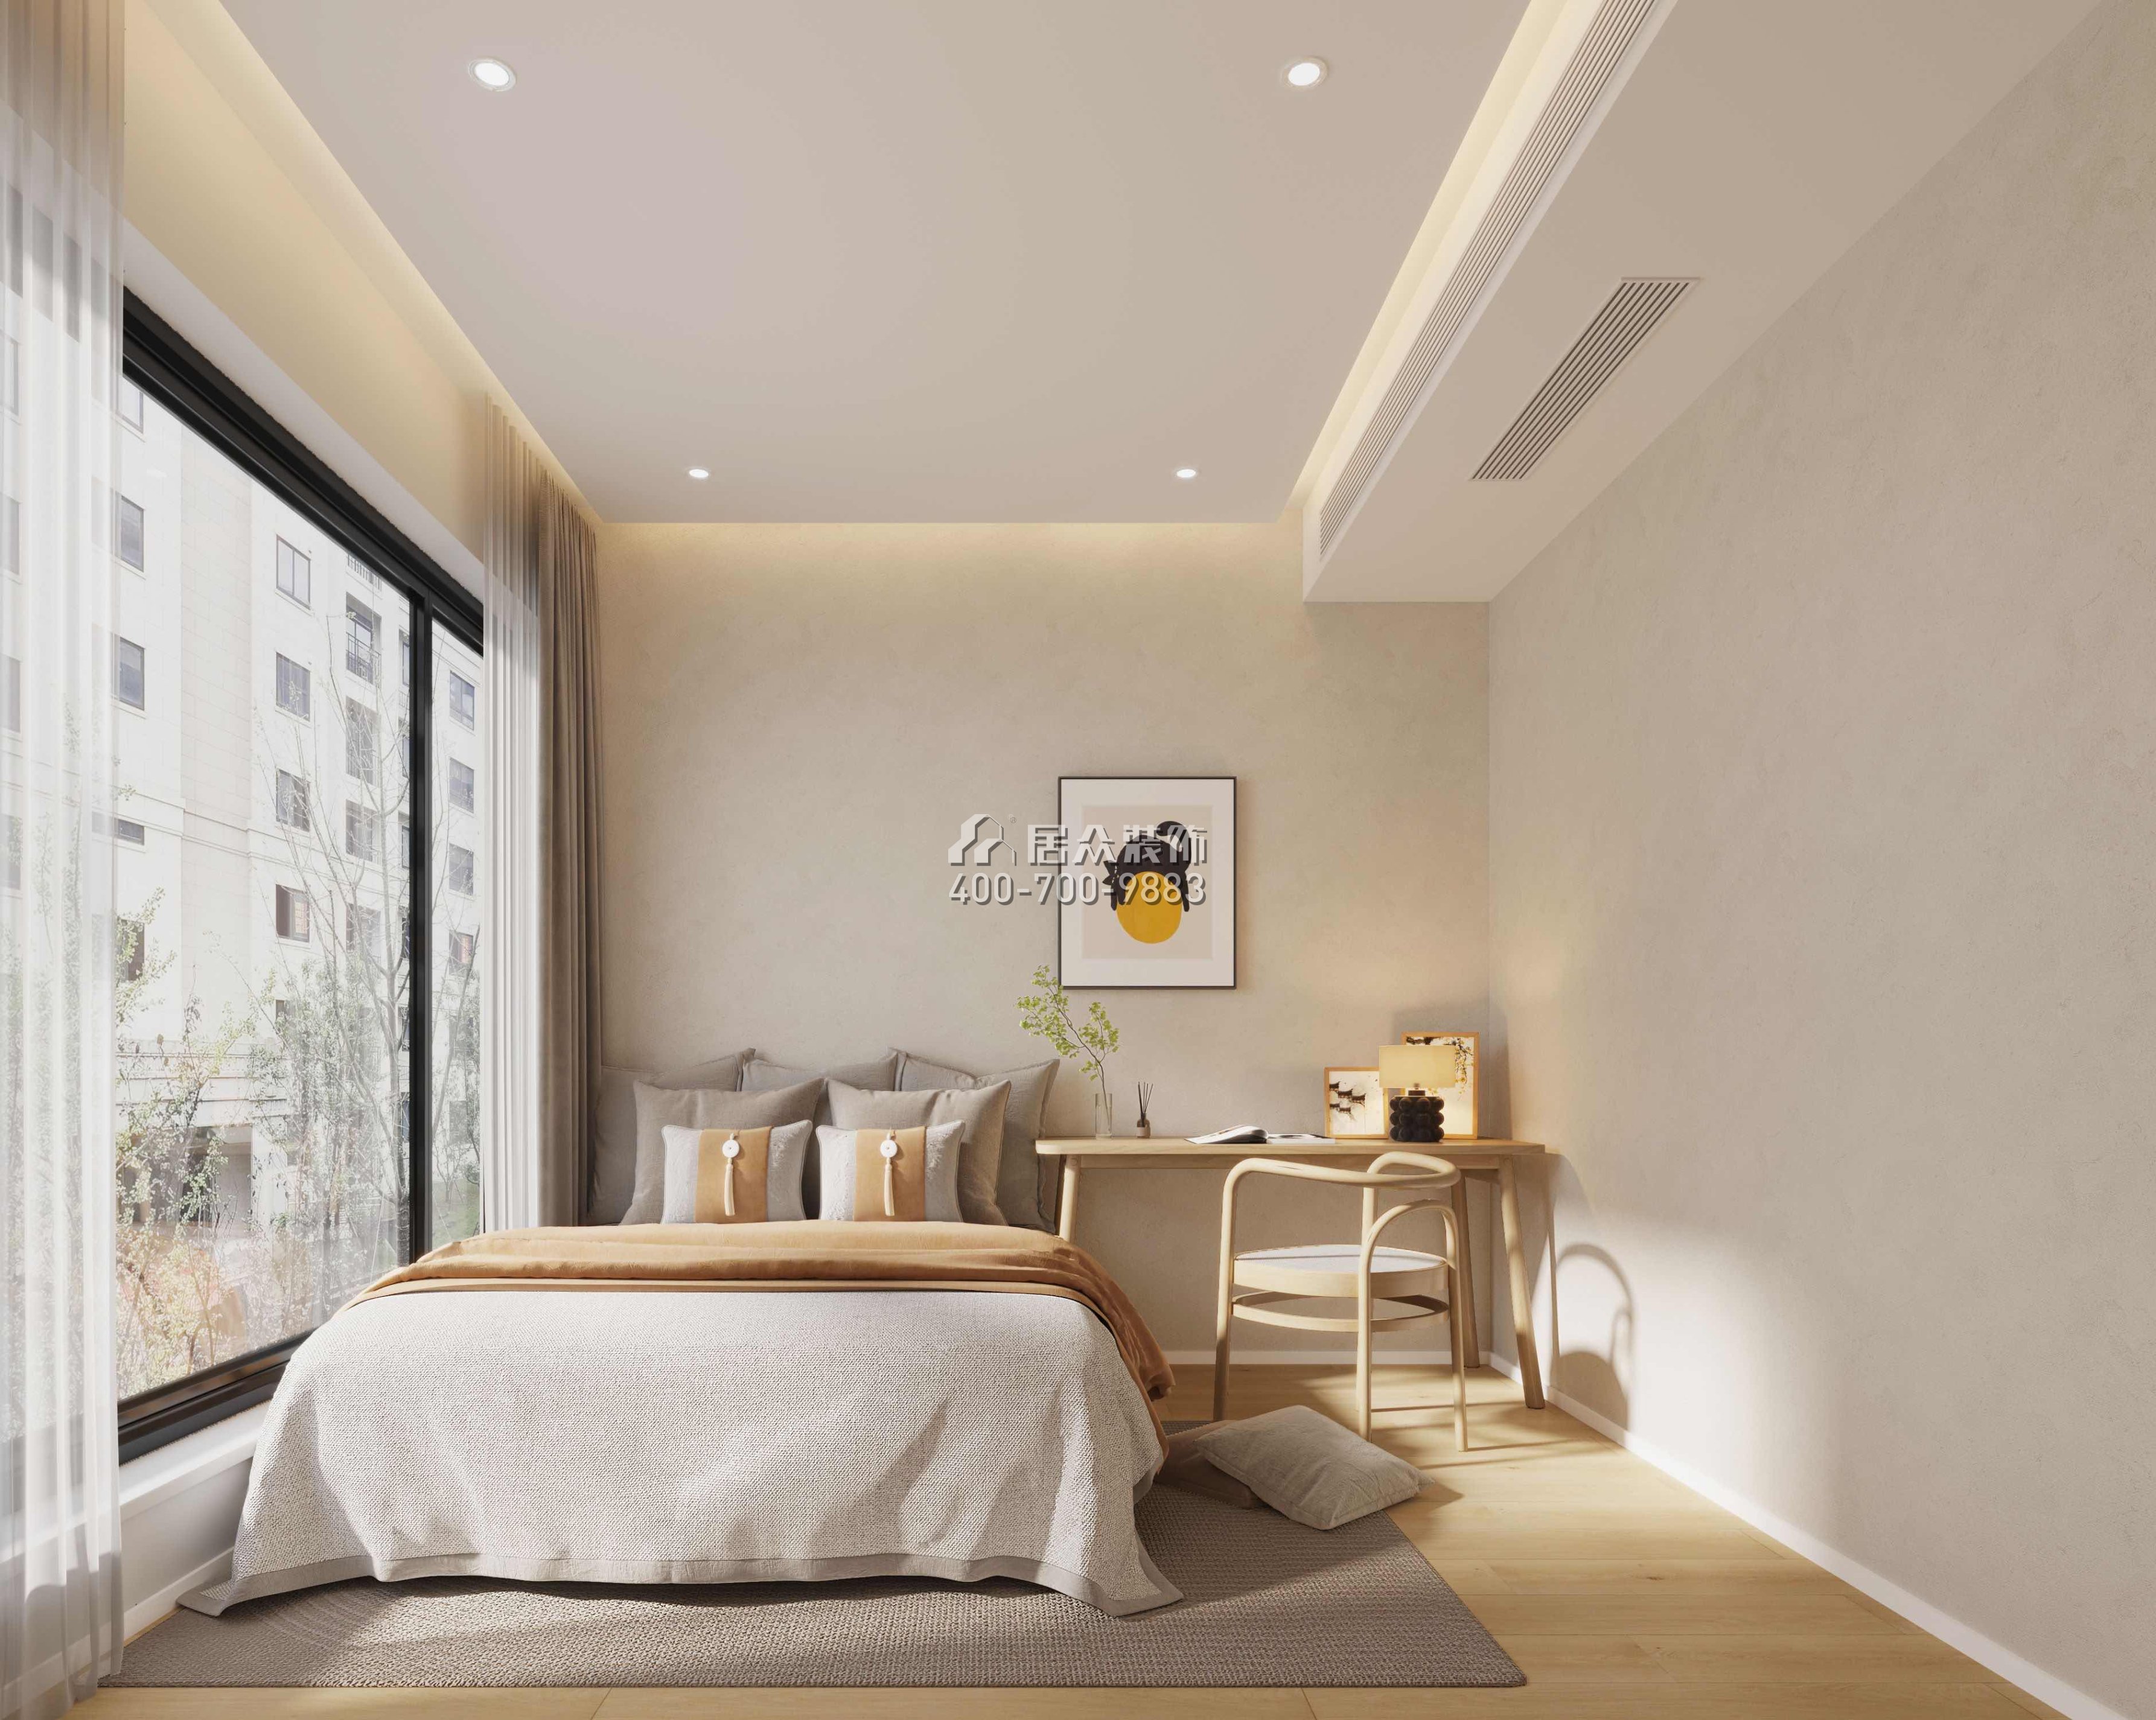 天健天驕南苑123平方米現代簡約風格平層戶型臥室裝修效果圖